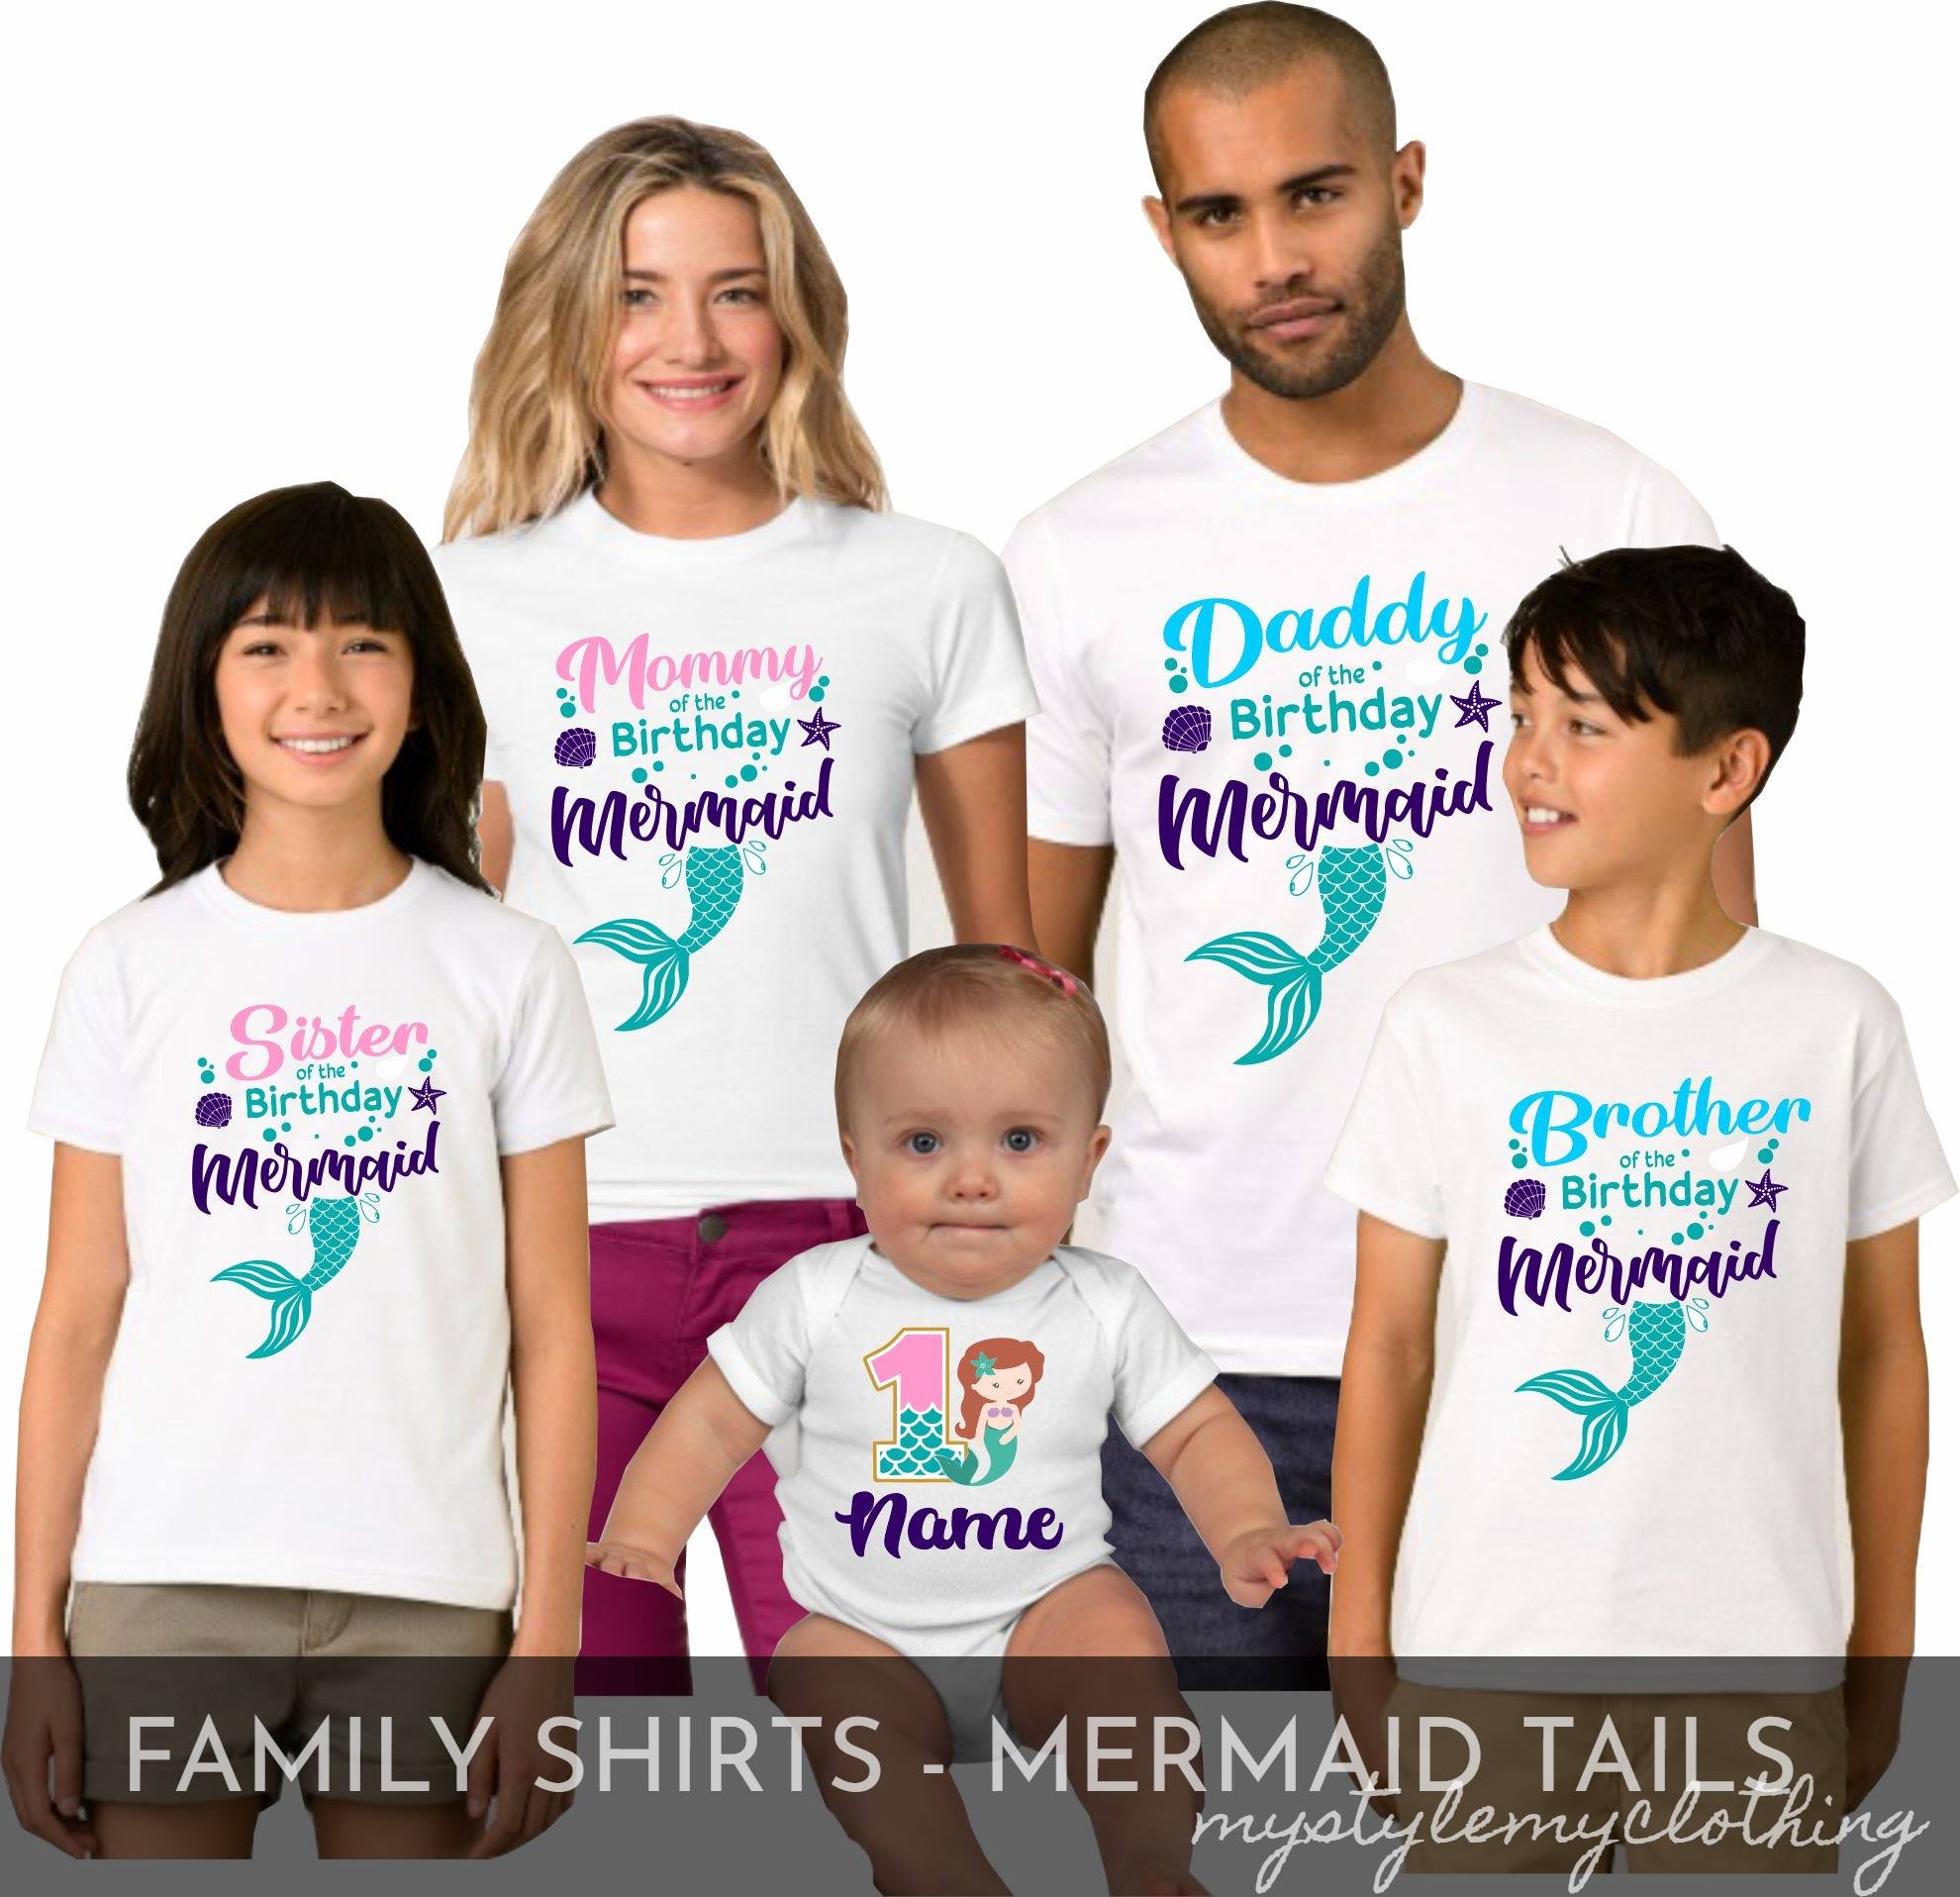 Mermaid Birthday T Shirt,Matching Family Shirt,Personalized T Shirt,Birthday Gift,Custom Shirt,Family Mermaid Birthday,Birthday Girl Party